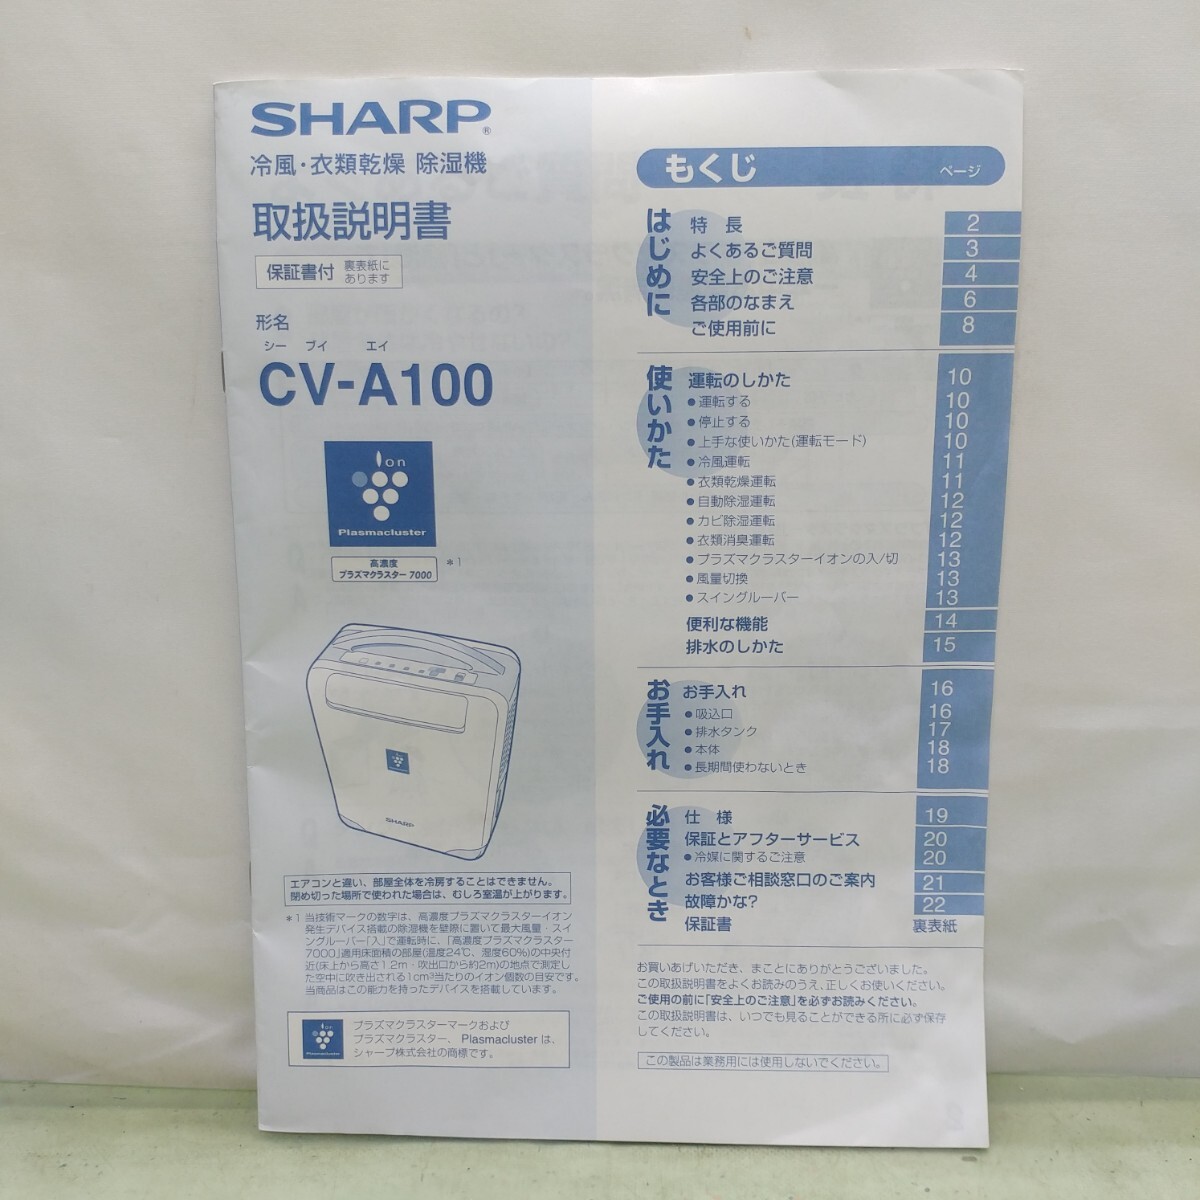 SHARP/ sharp CV-A100-W холодный способ осушитель осушение способность арматурный профиль 23 татами "plasma cluster" система очищения воздуха ионами одежда сухой осушитель 